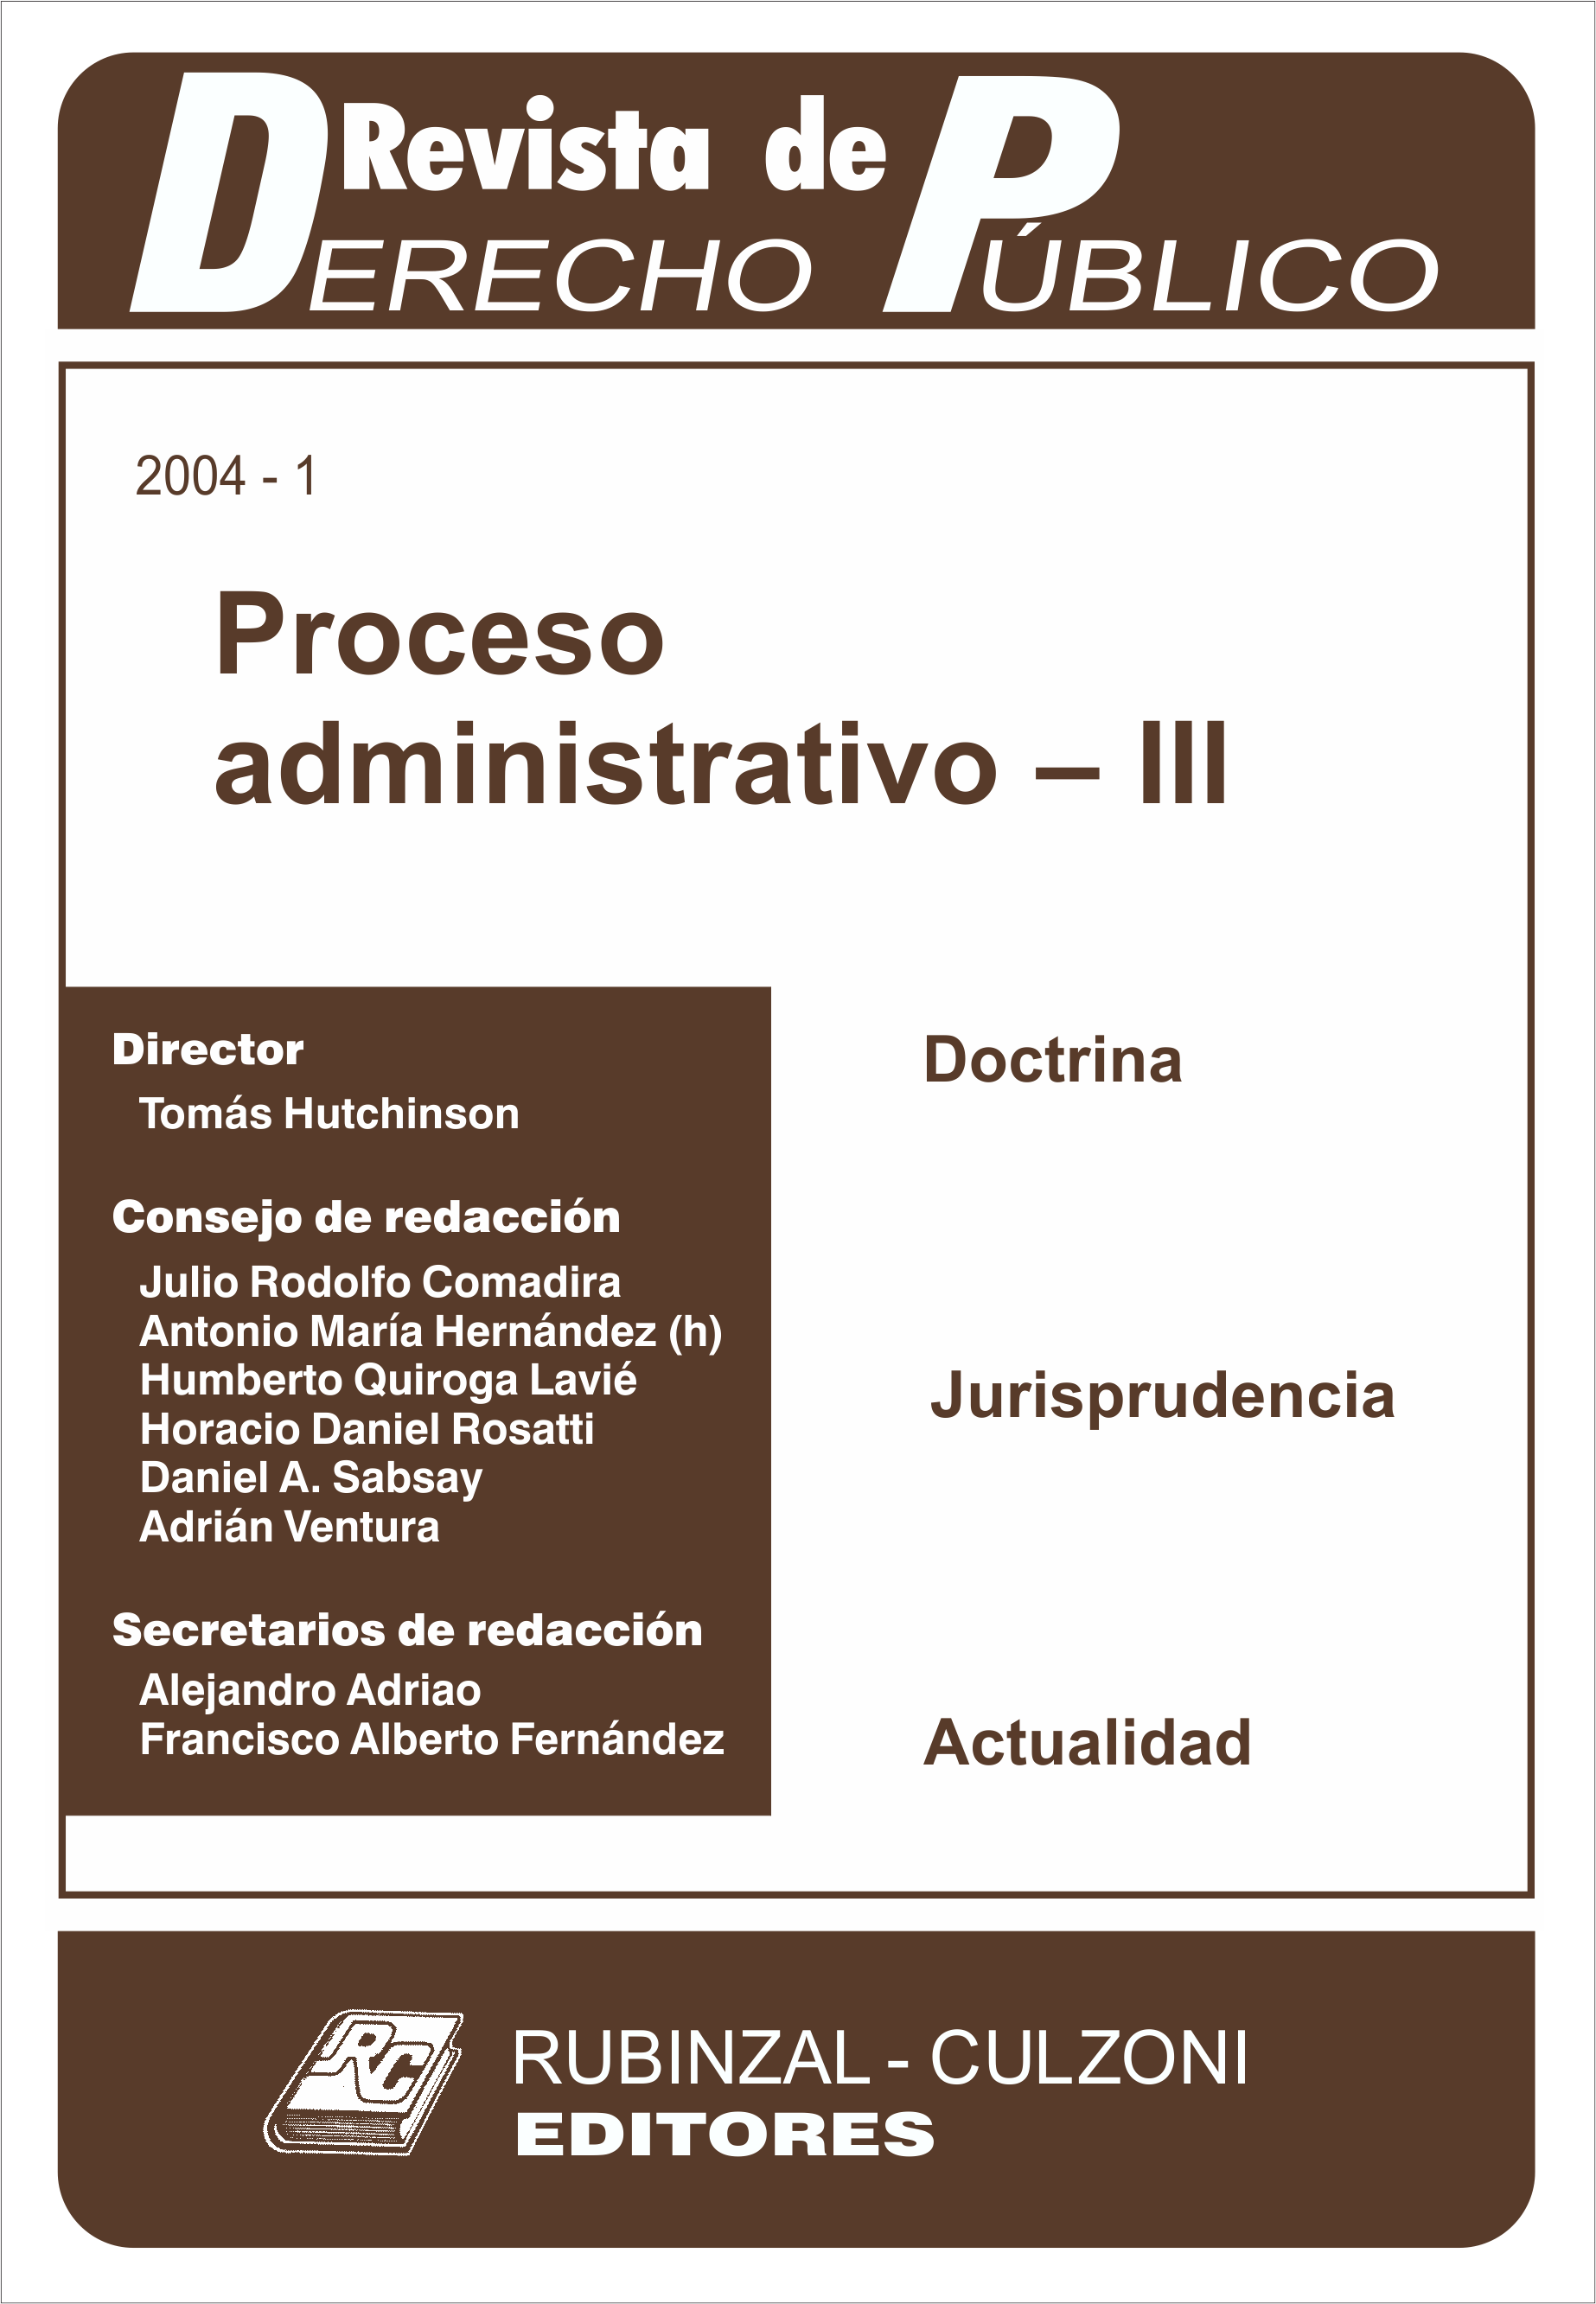 Revista de Derecho Público - Proceso administrativo - III.